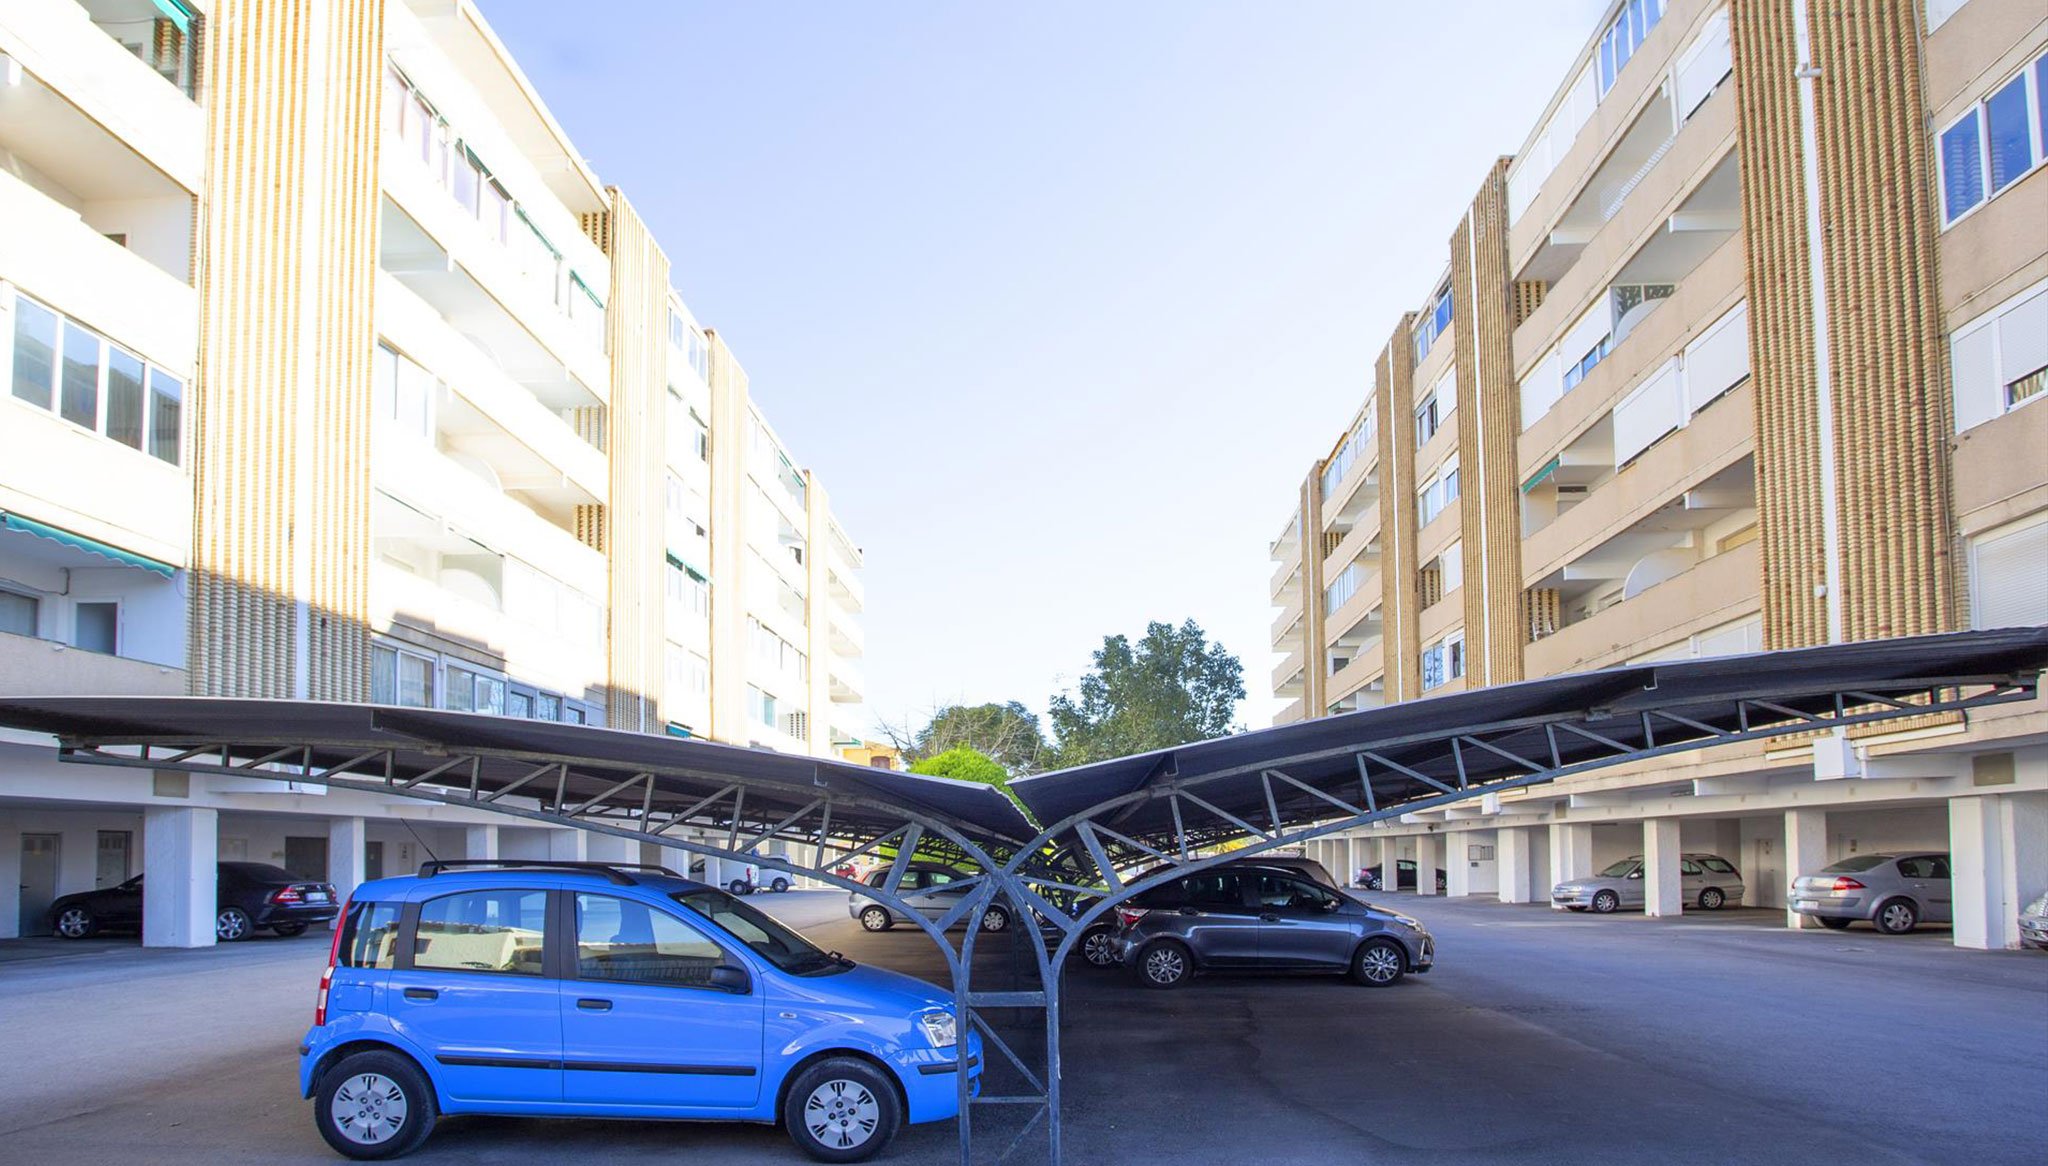 Parking en la zona común de un apartamento de vacaciones en Jávea – MMC Property Services